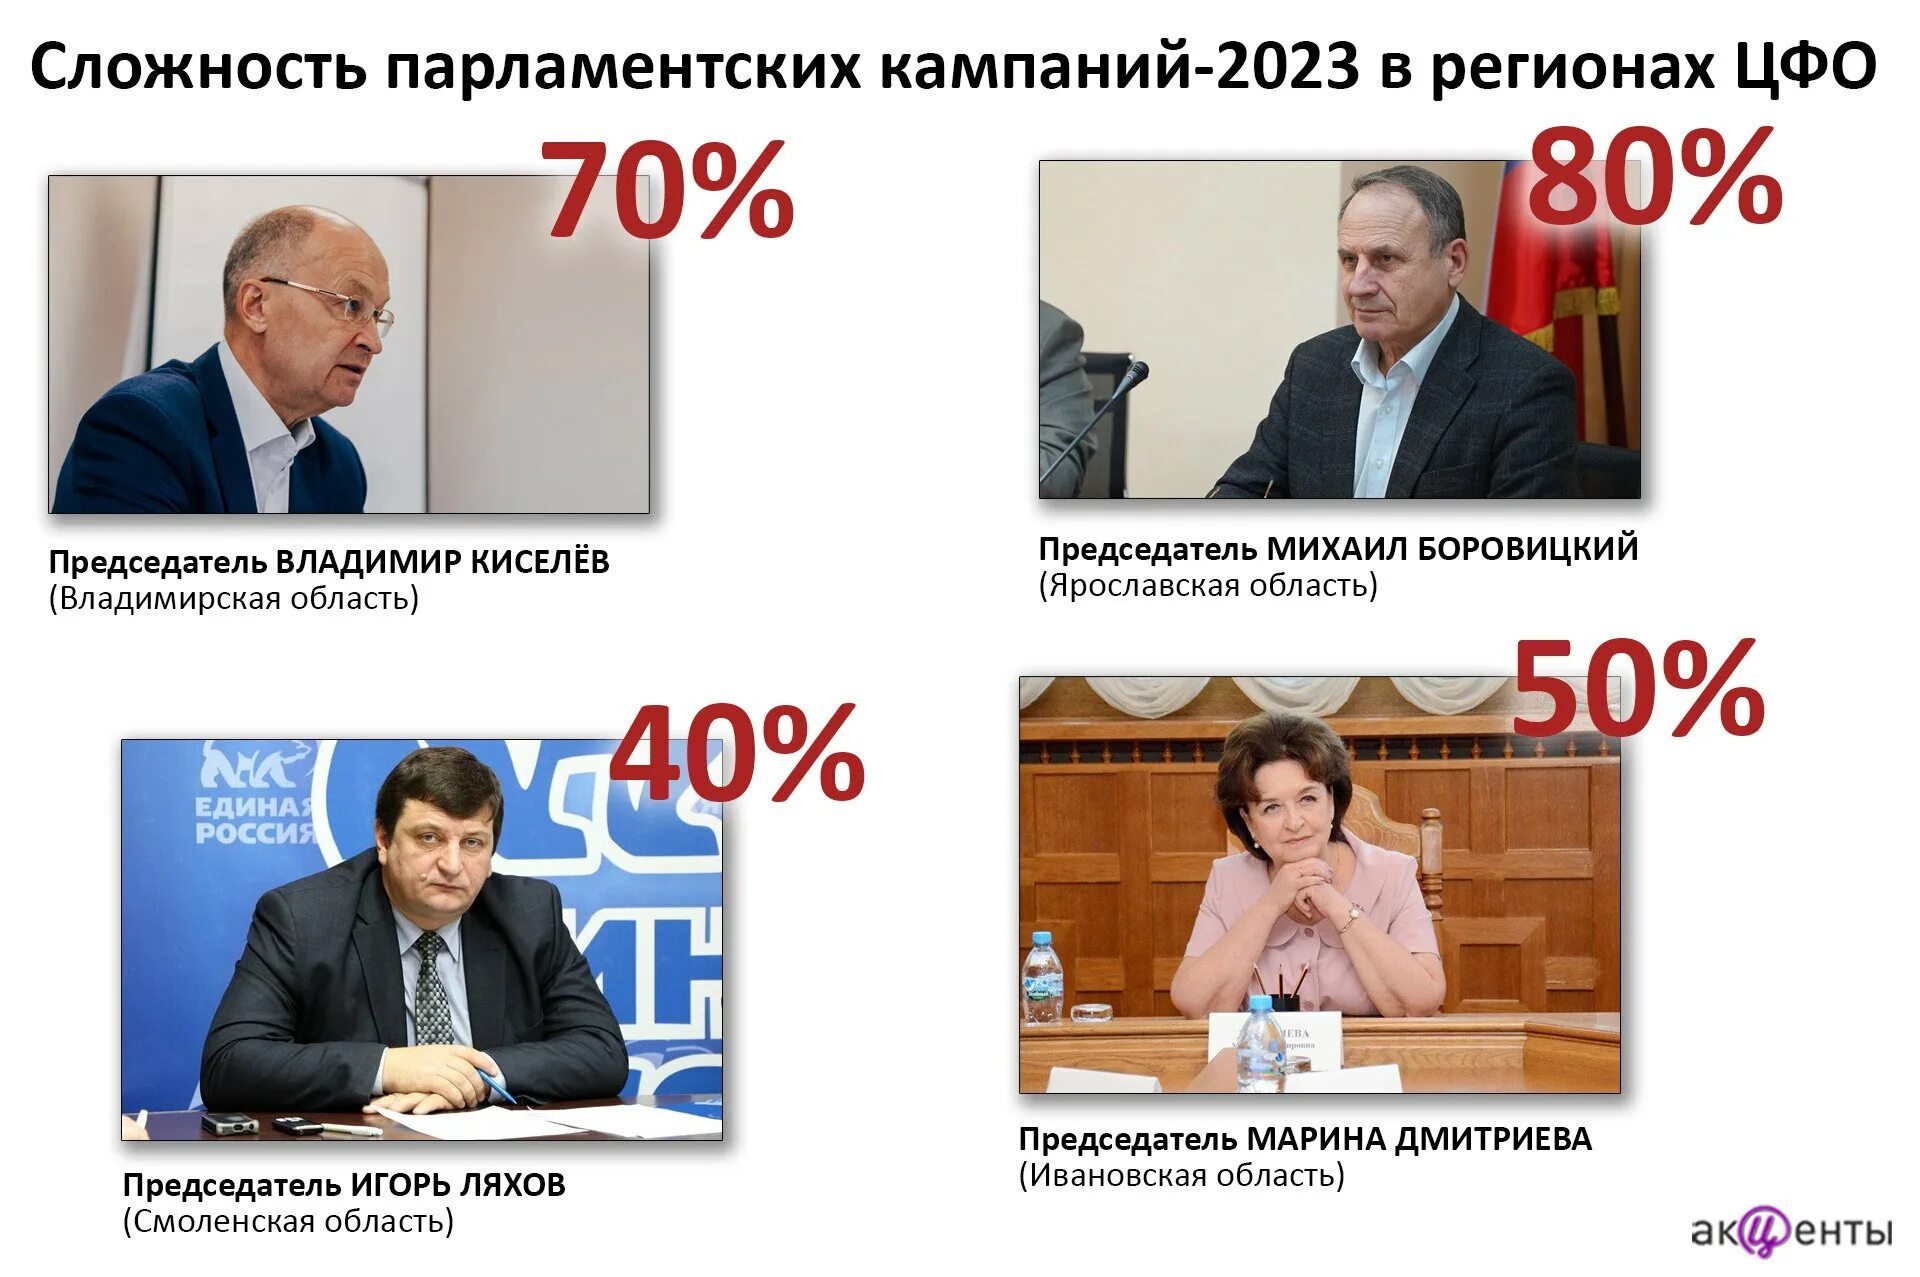 Какие выборы 2023 года в россии. Выборы 2023. Выборы 2023 в России. Выборы в 2023 году в России картинки. ГАЗ выборы 2023.